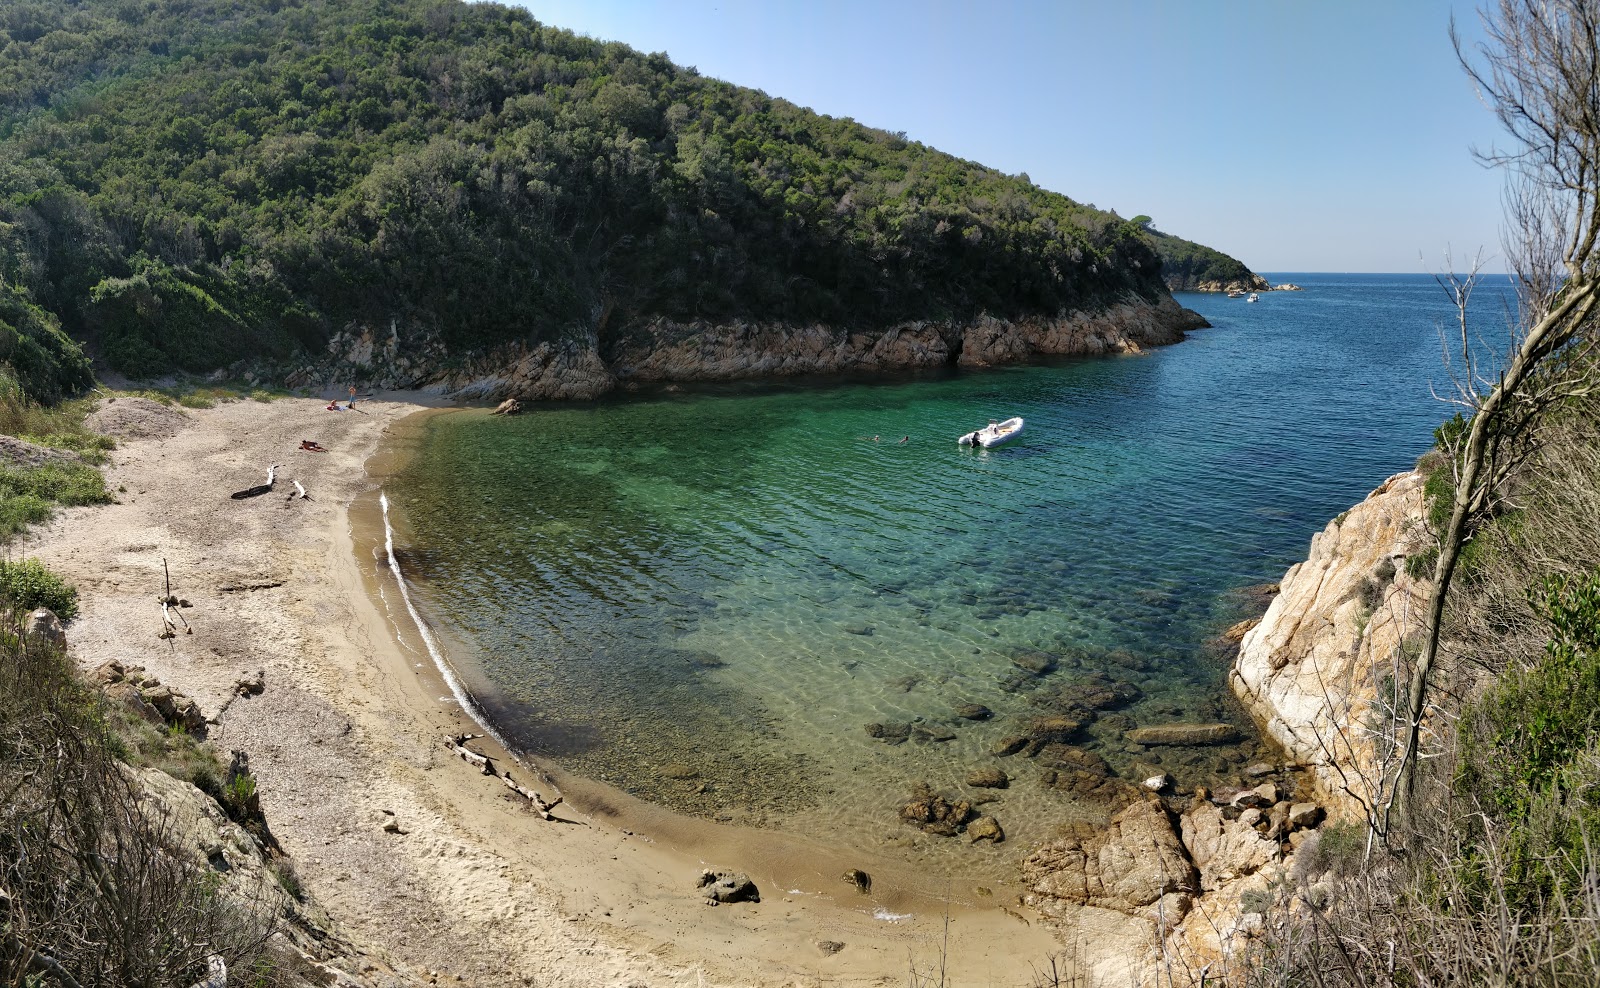 Fotografija Spiaggia della Lamaia z turkizna čista voda površino